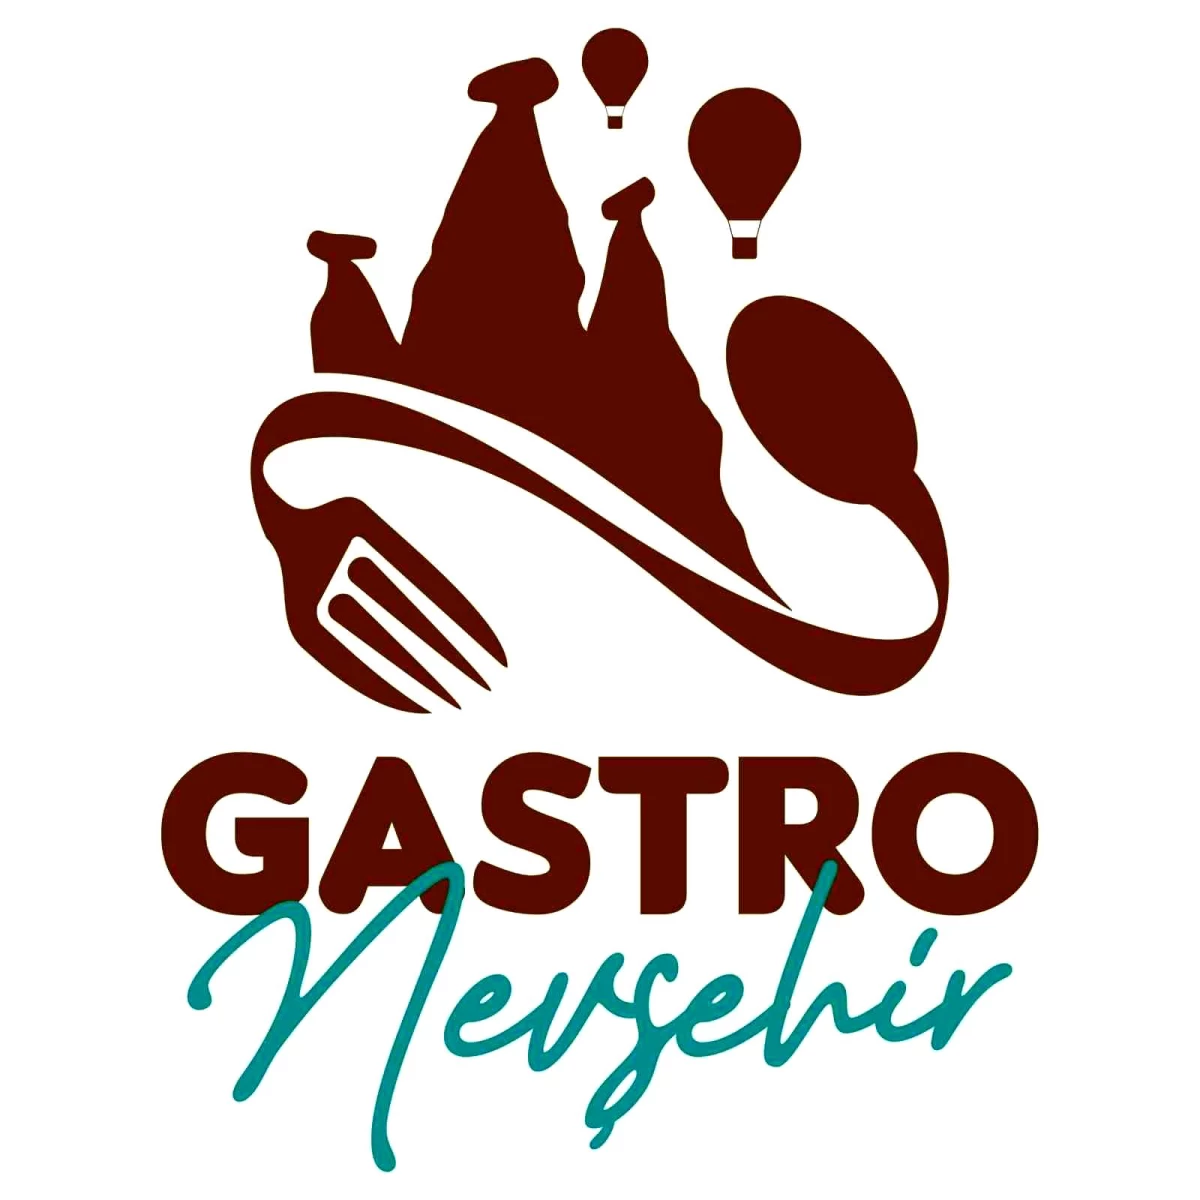 Nevşehir, UNESCO Türkiye Milli Komisyonu tarafından Gastronomi Şehri olarak kabul edildi